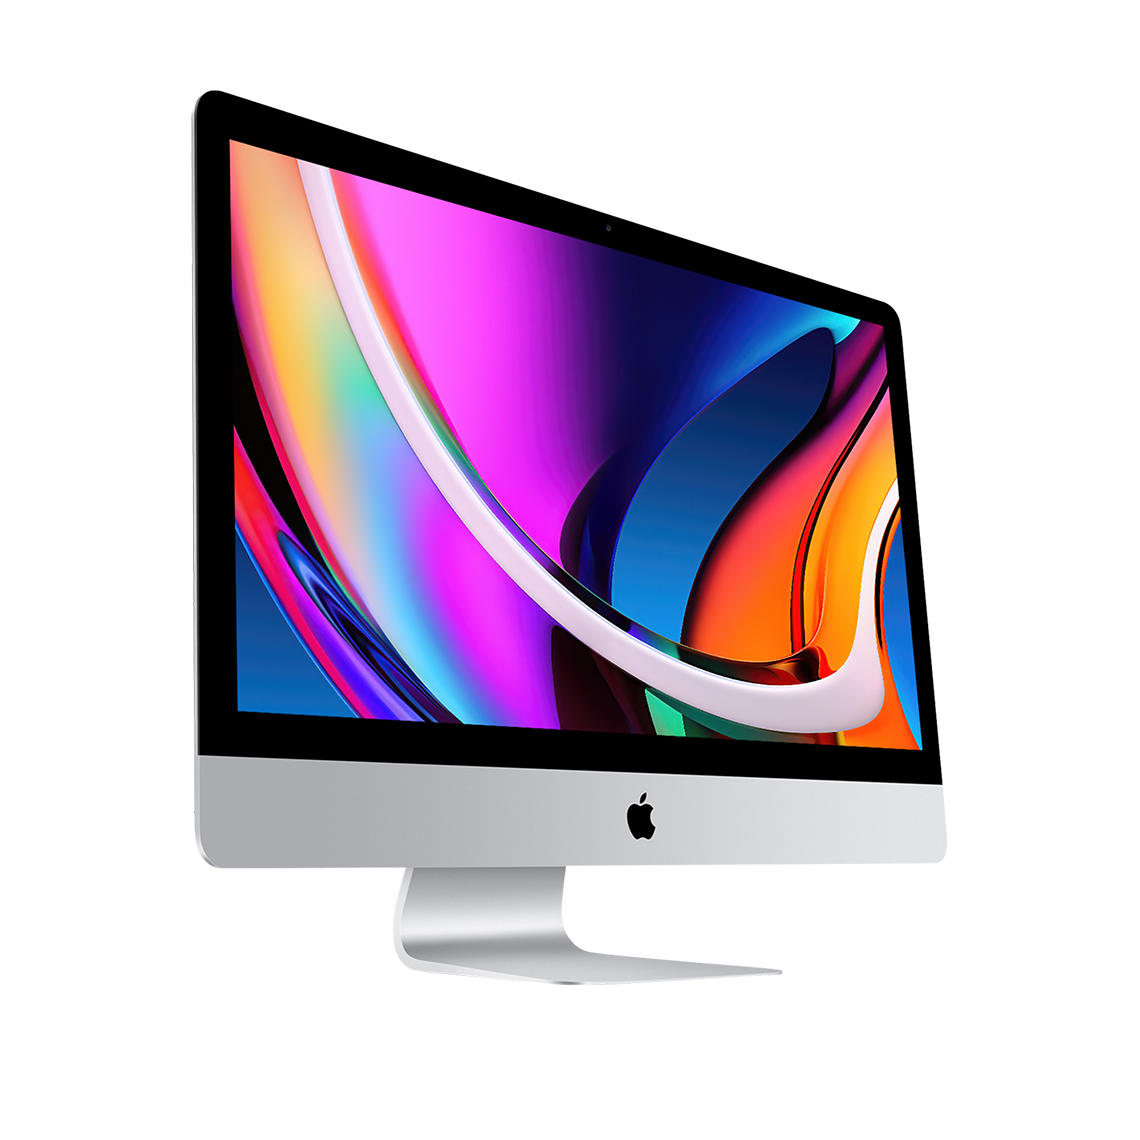 2020 iMac 27-inch 5K - Intel Core i7, 8GB, 4TB Flash, Radeon Pro 5500XT 8GB, Grade A